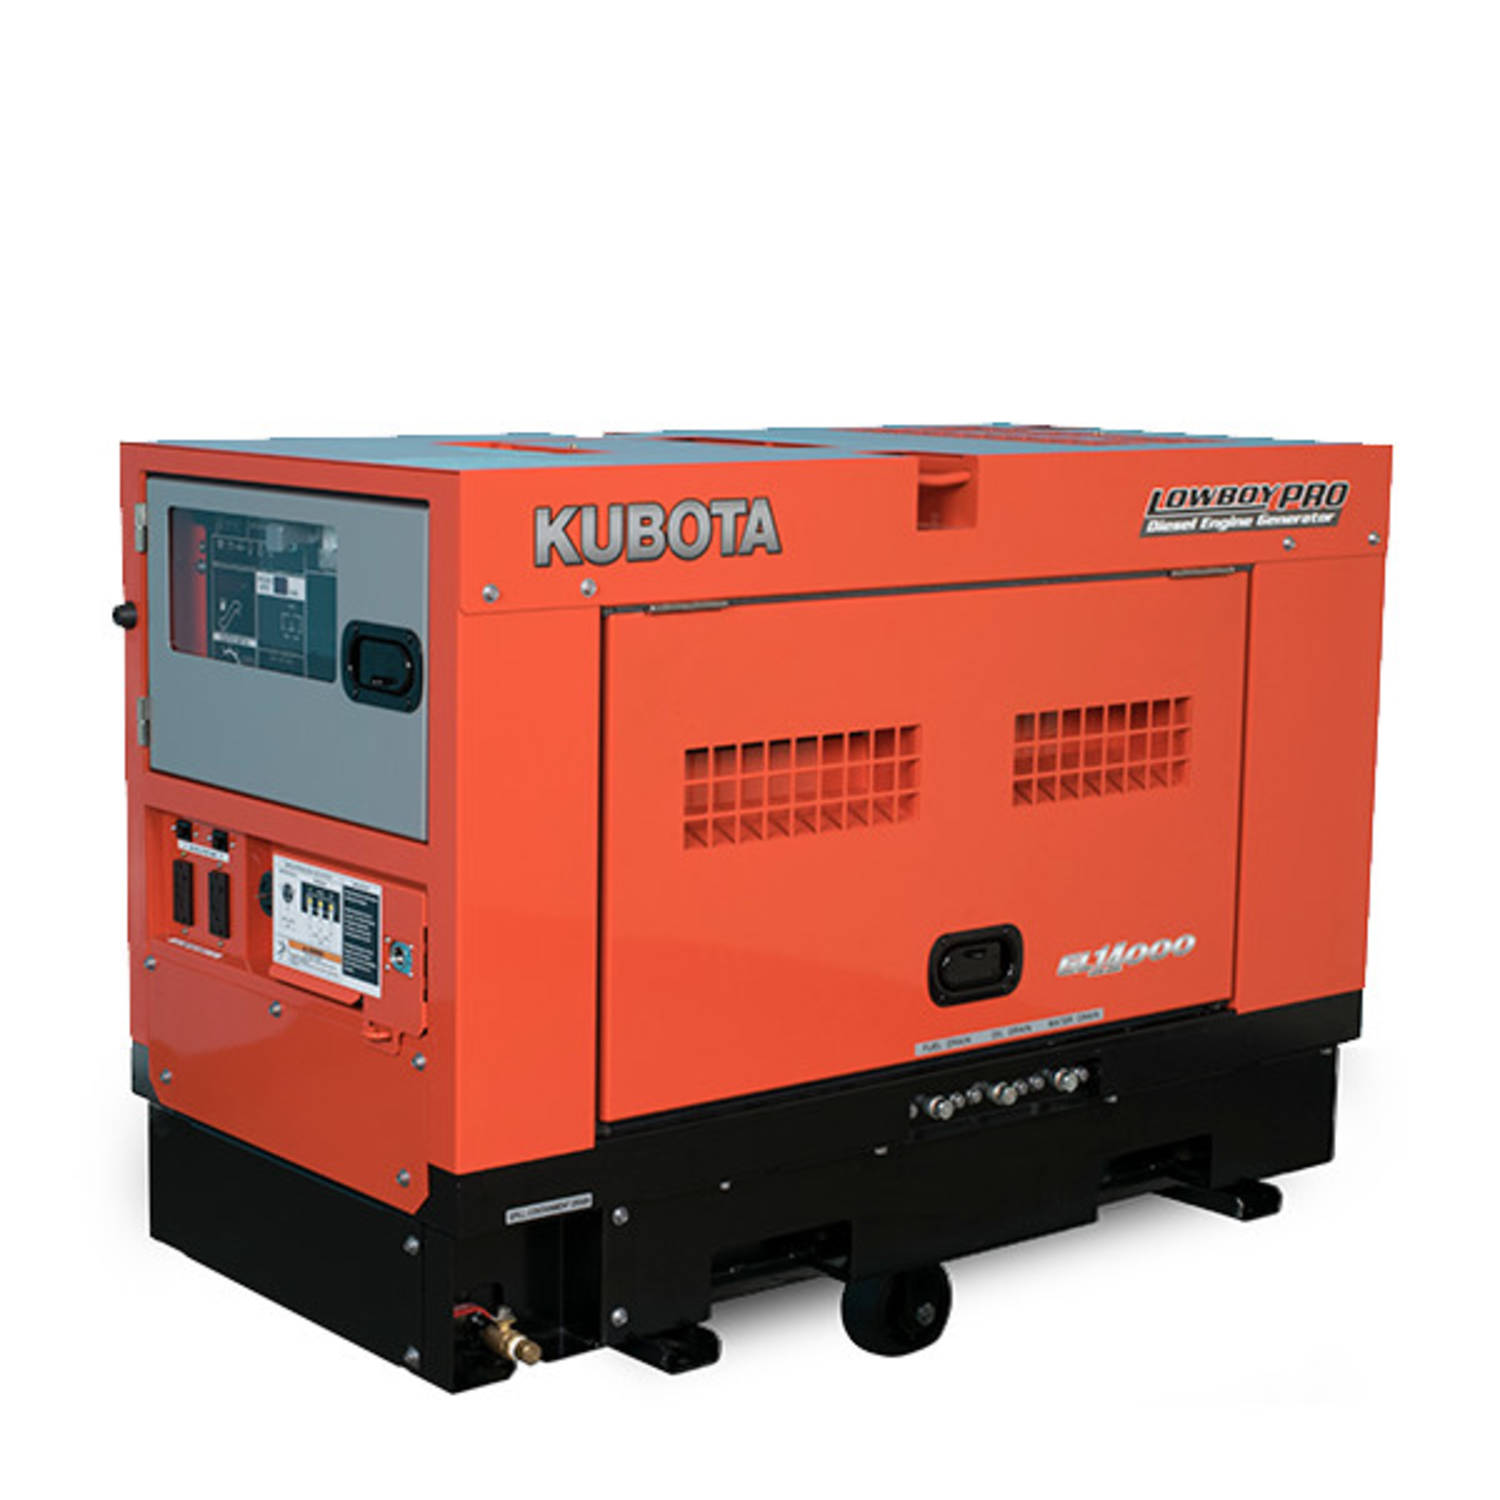 Kubota Generators